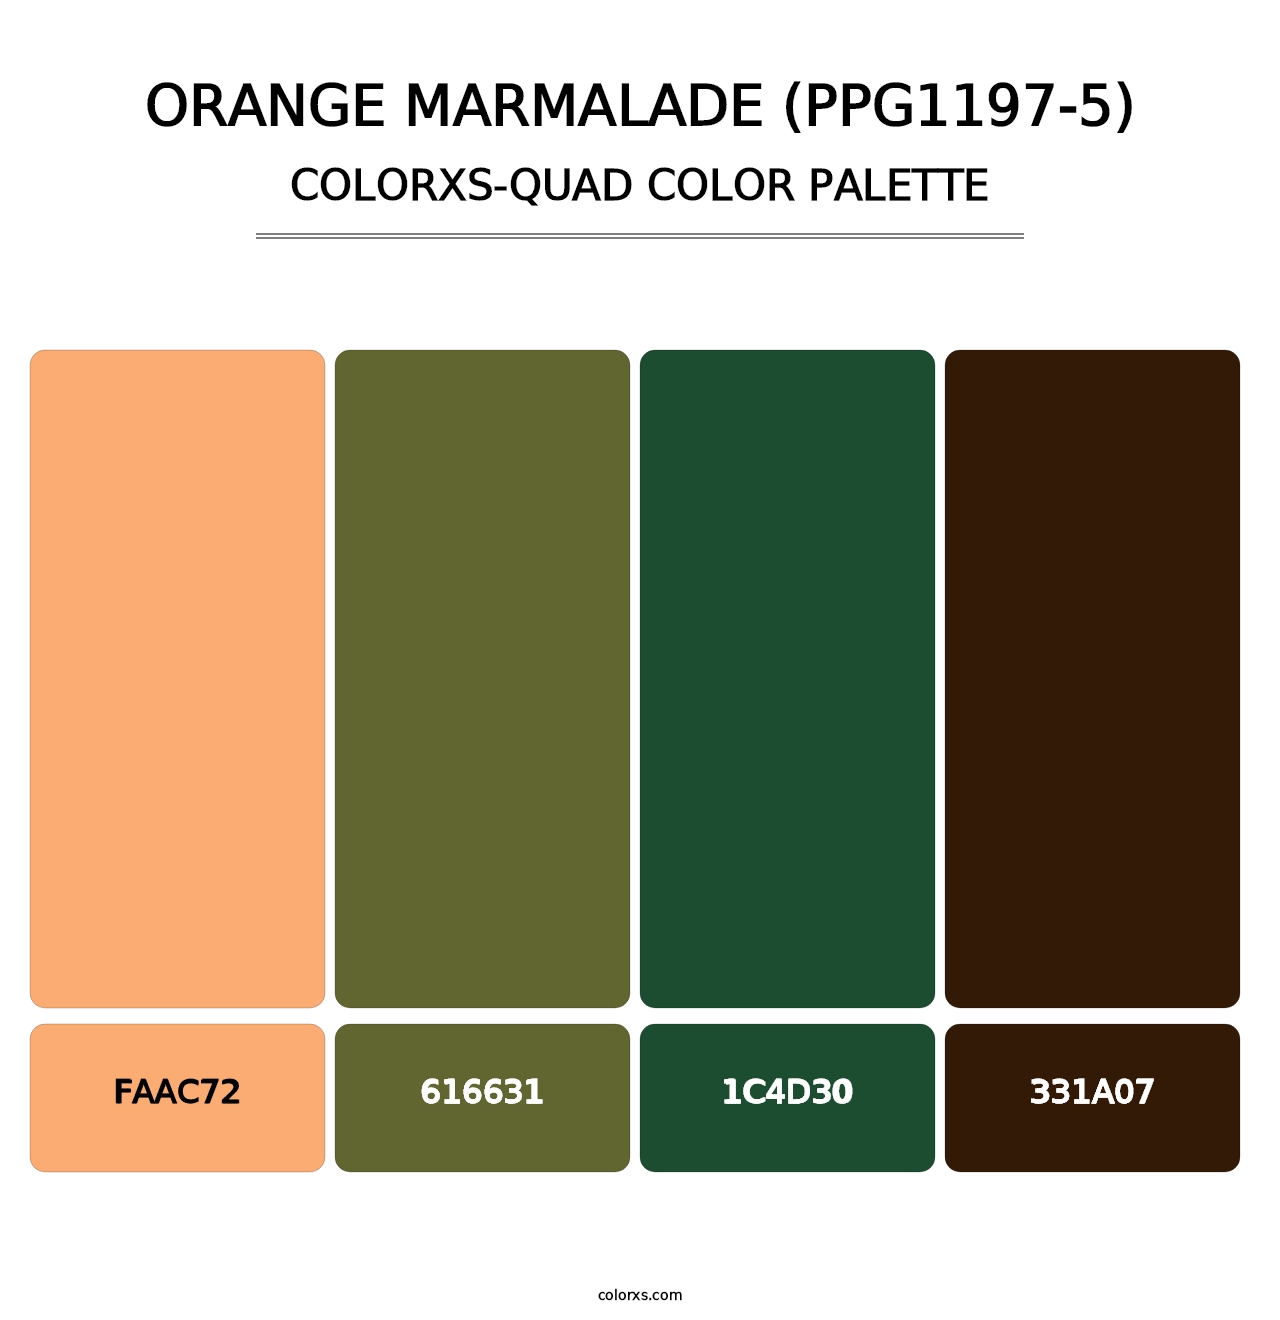 Orange Marmalade (PPG1197-5) - Colorxs Quad Palette